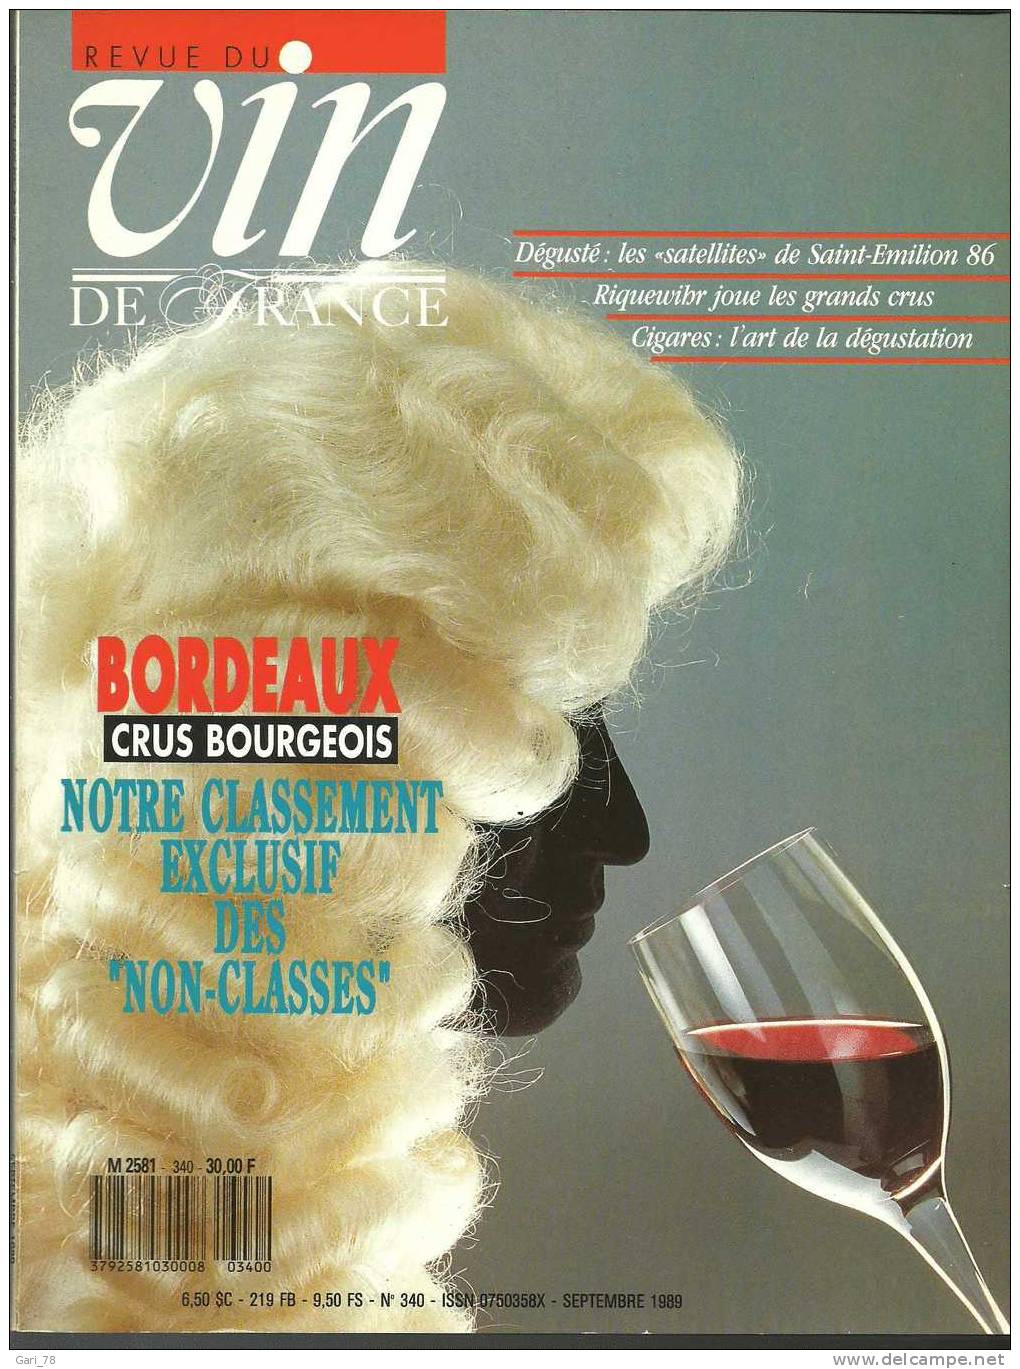 Revue Du VIN DE FRANCE N° 340 - Septembre 1989 : Bordeaux Crus Bourgeois, Classement "non Classés"  Riquewihr Etc - Cuisine & Vins